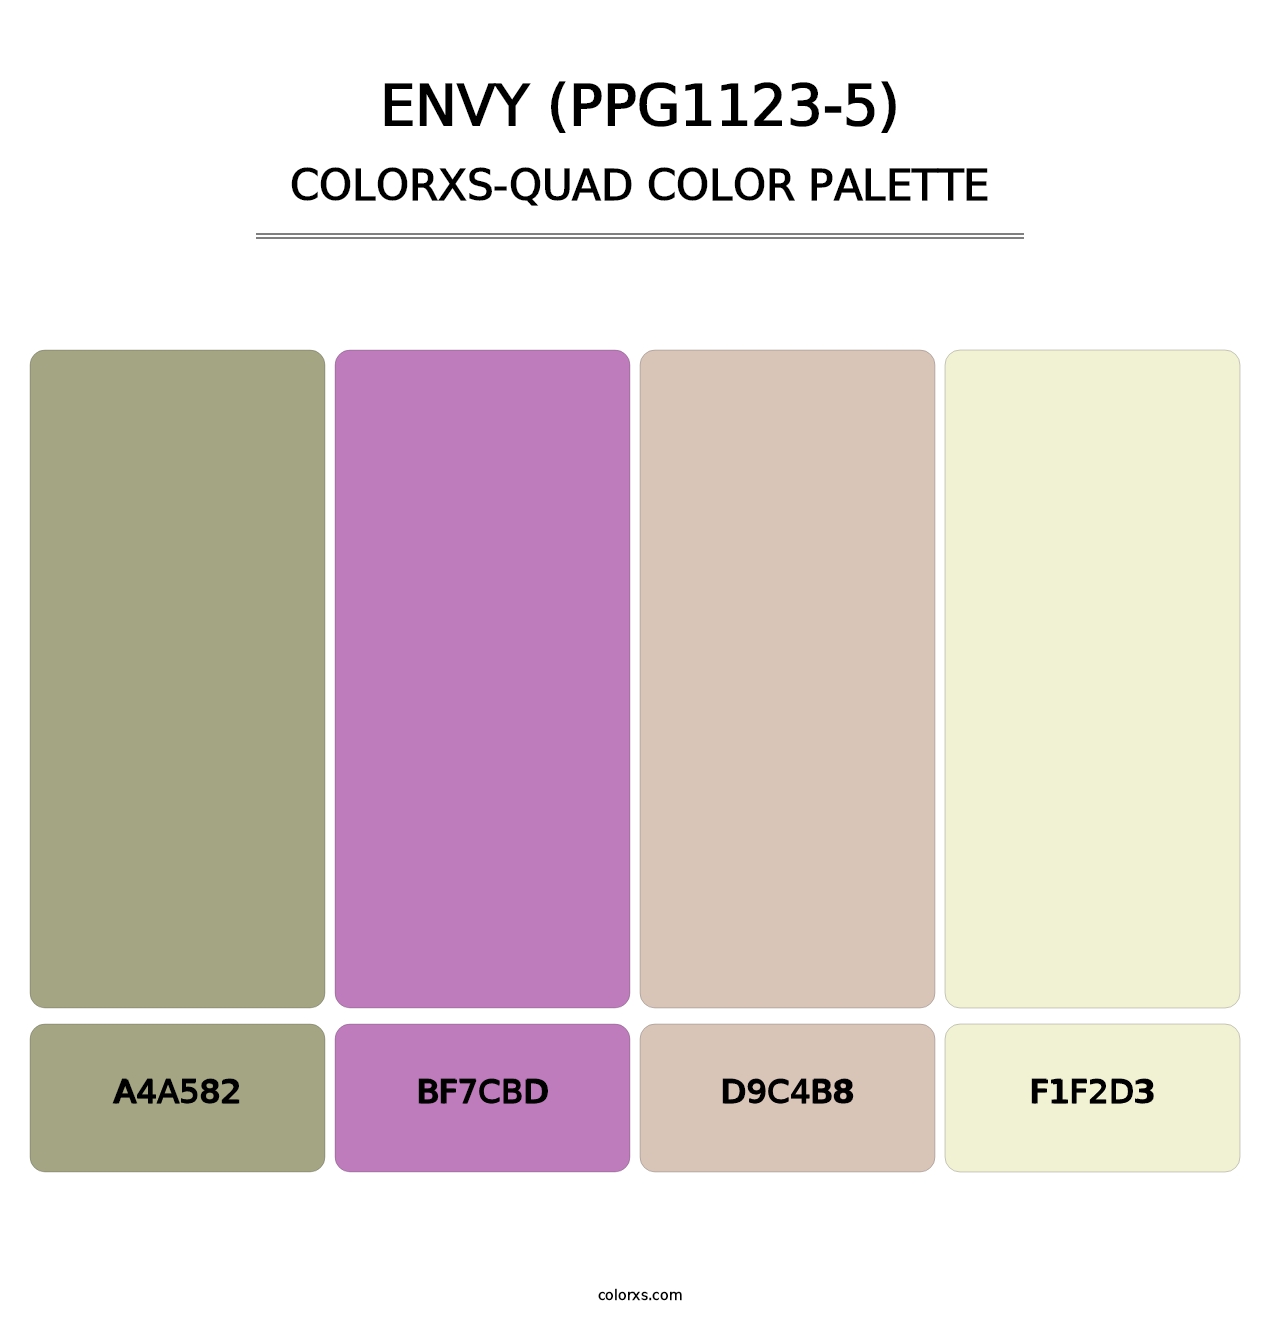 Envy (PPG1123-5) - Colorxs Quad Palette